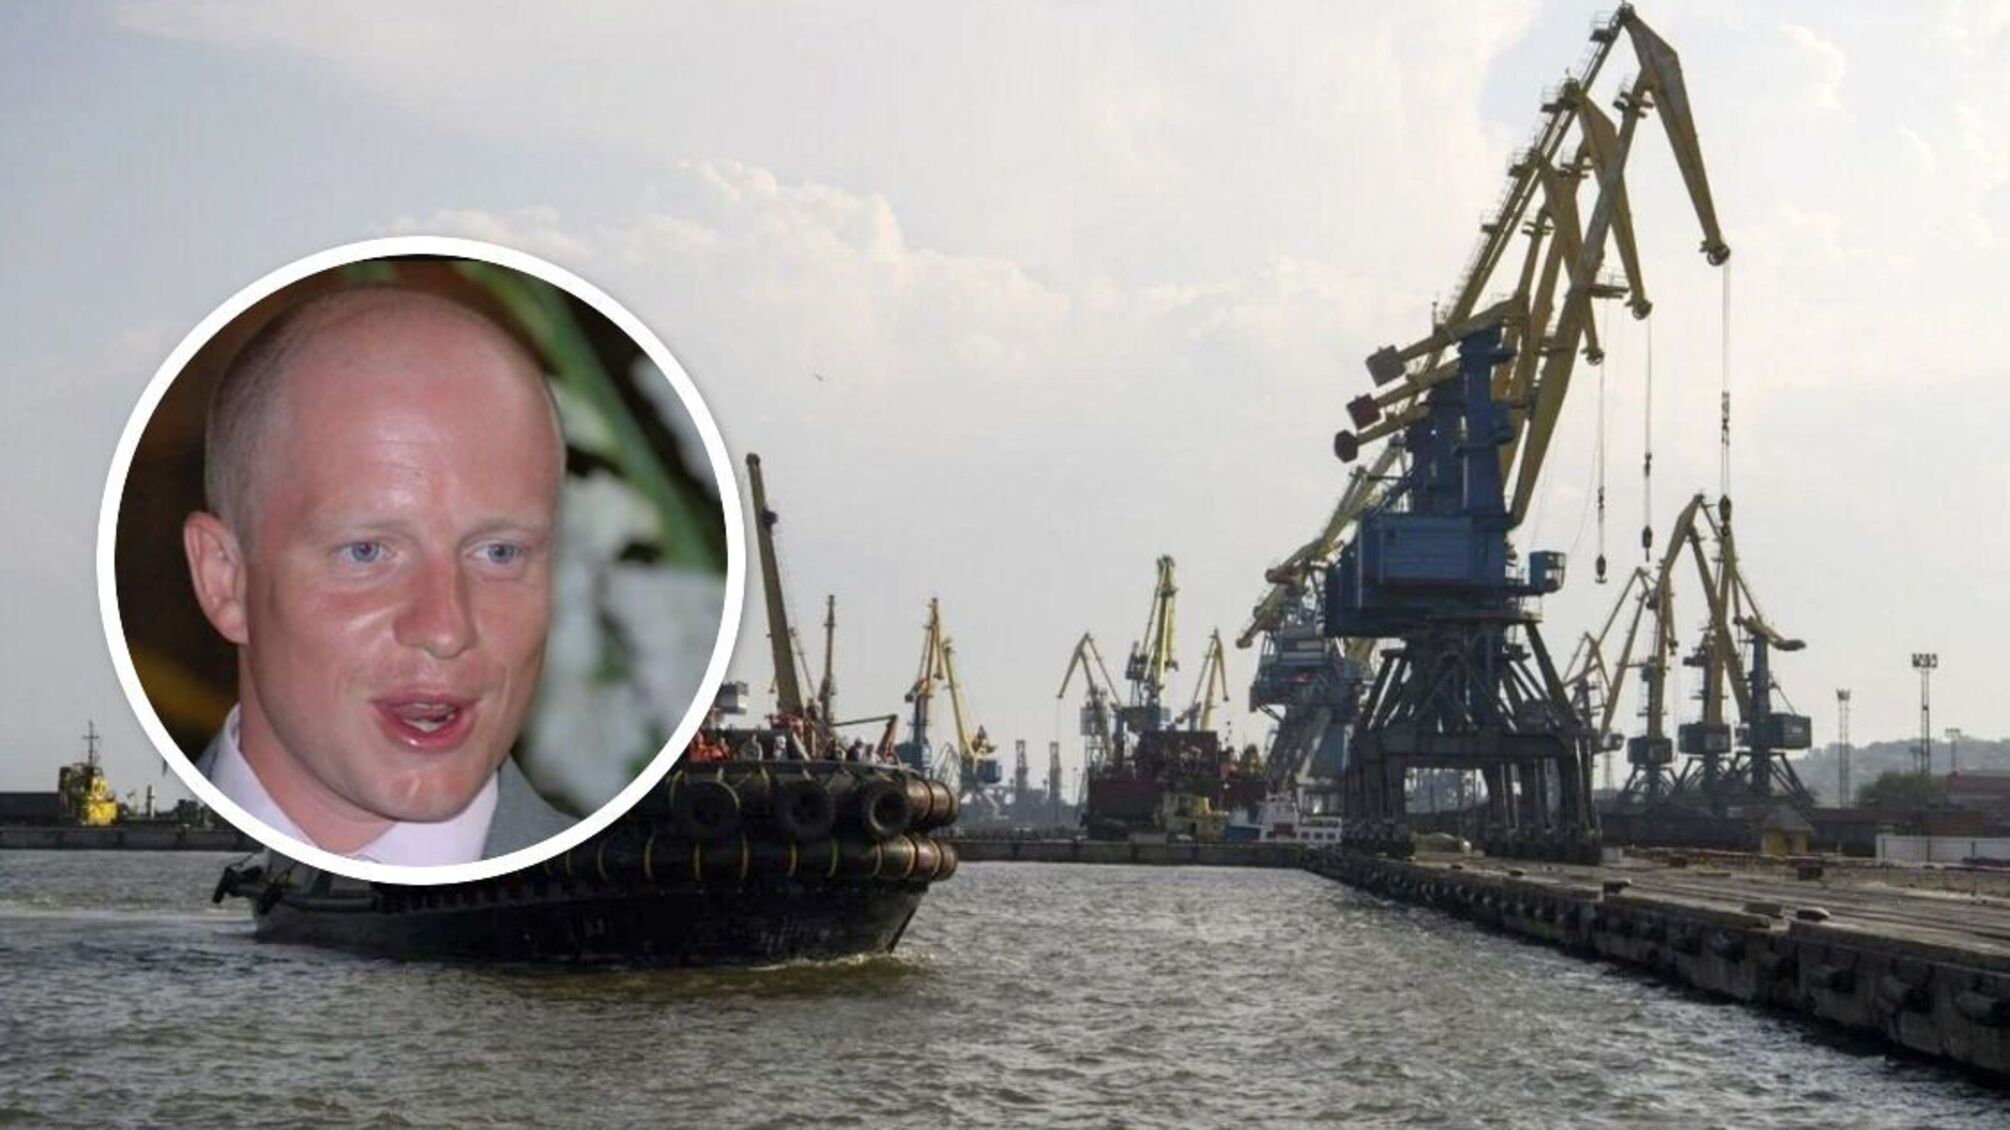 Порт 'Усть-Дунайск' продали по цене элеватора: причастен замминистра Мининфраструктуры Васьков - что известно